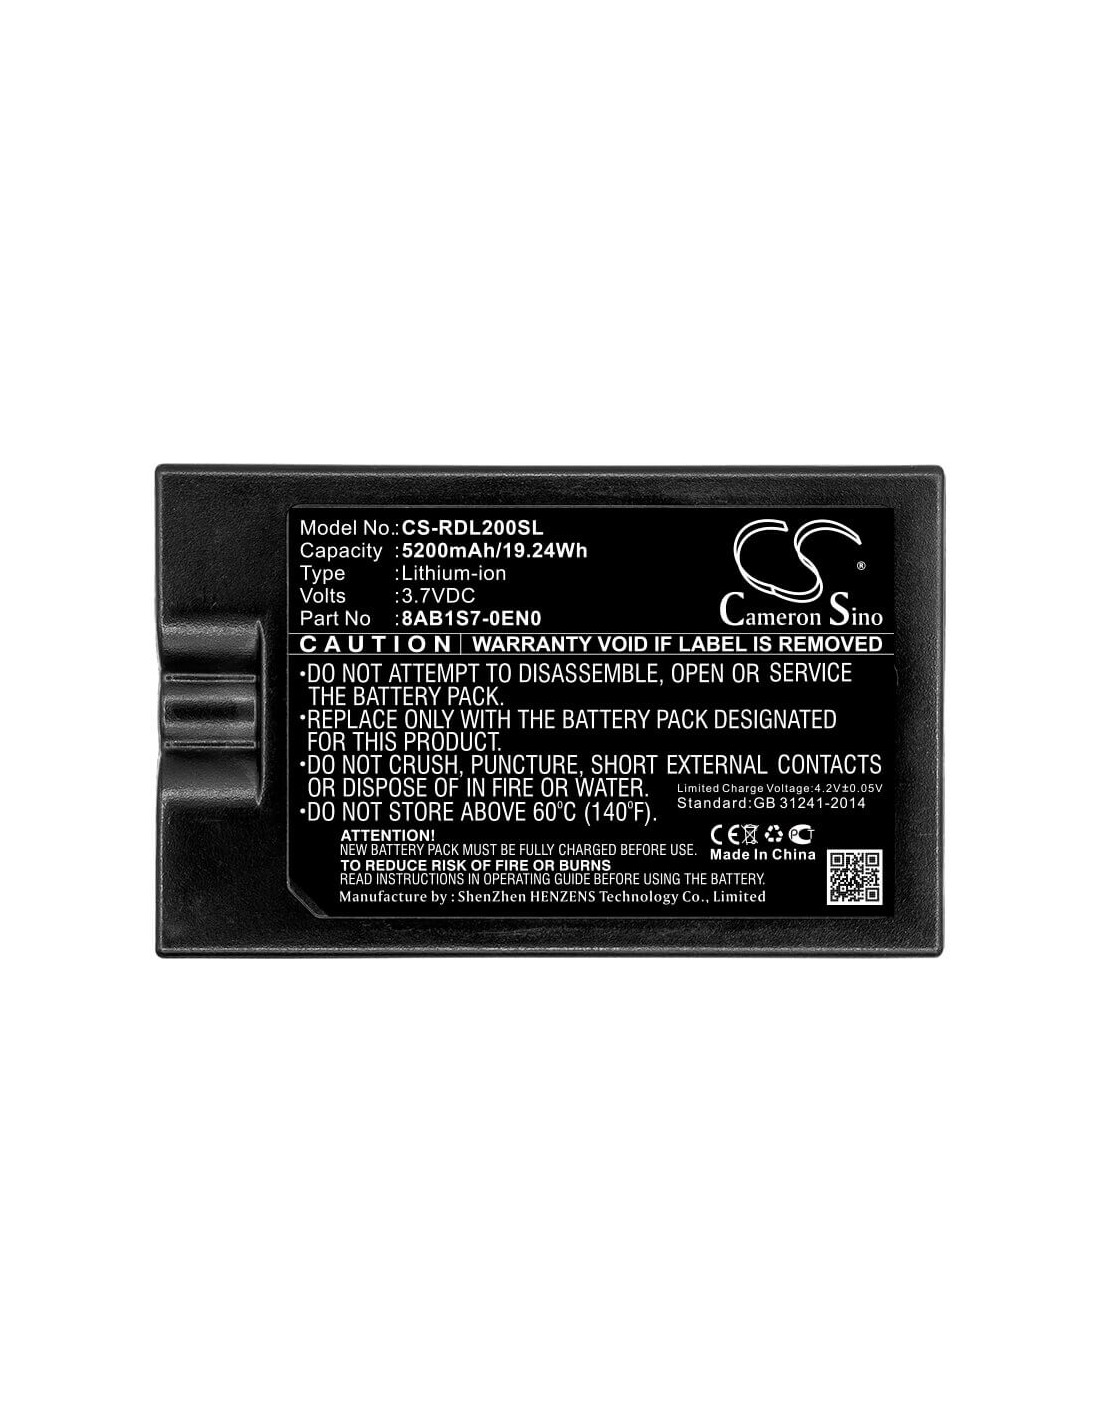 Battery for Ring, 8vr1s7, Spotlight Cam 3.7V, 5200mAh - 19.24Wh